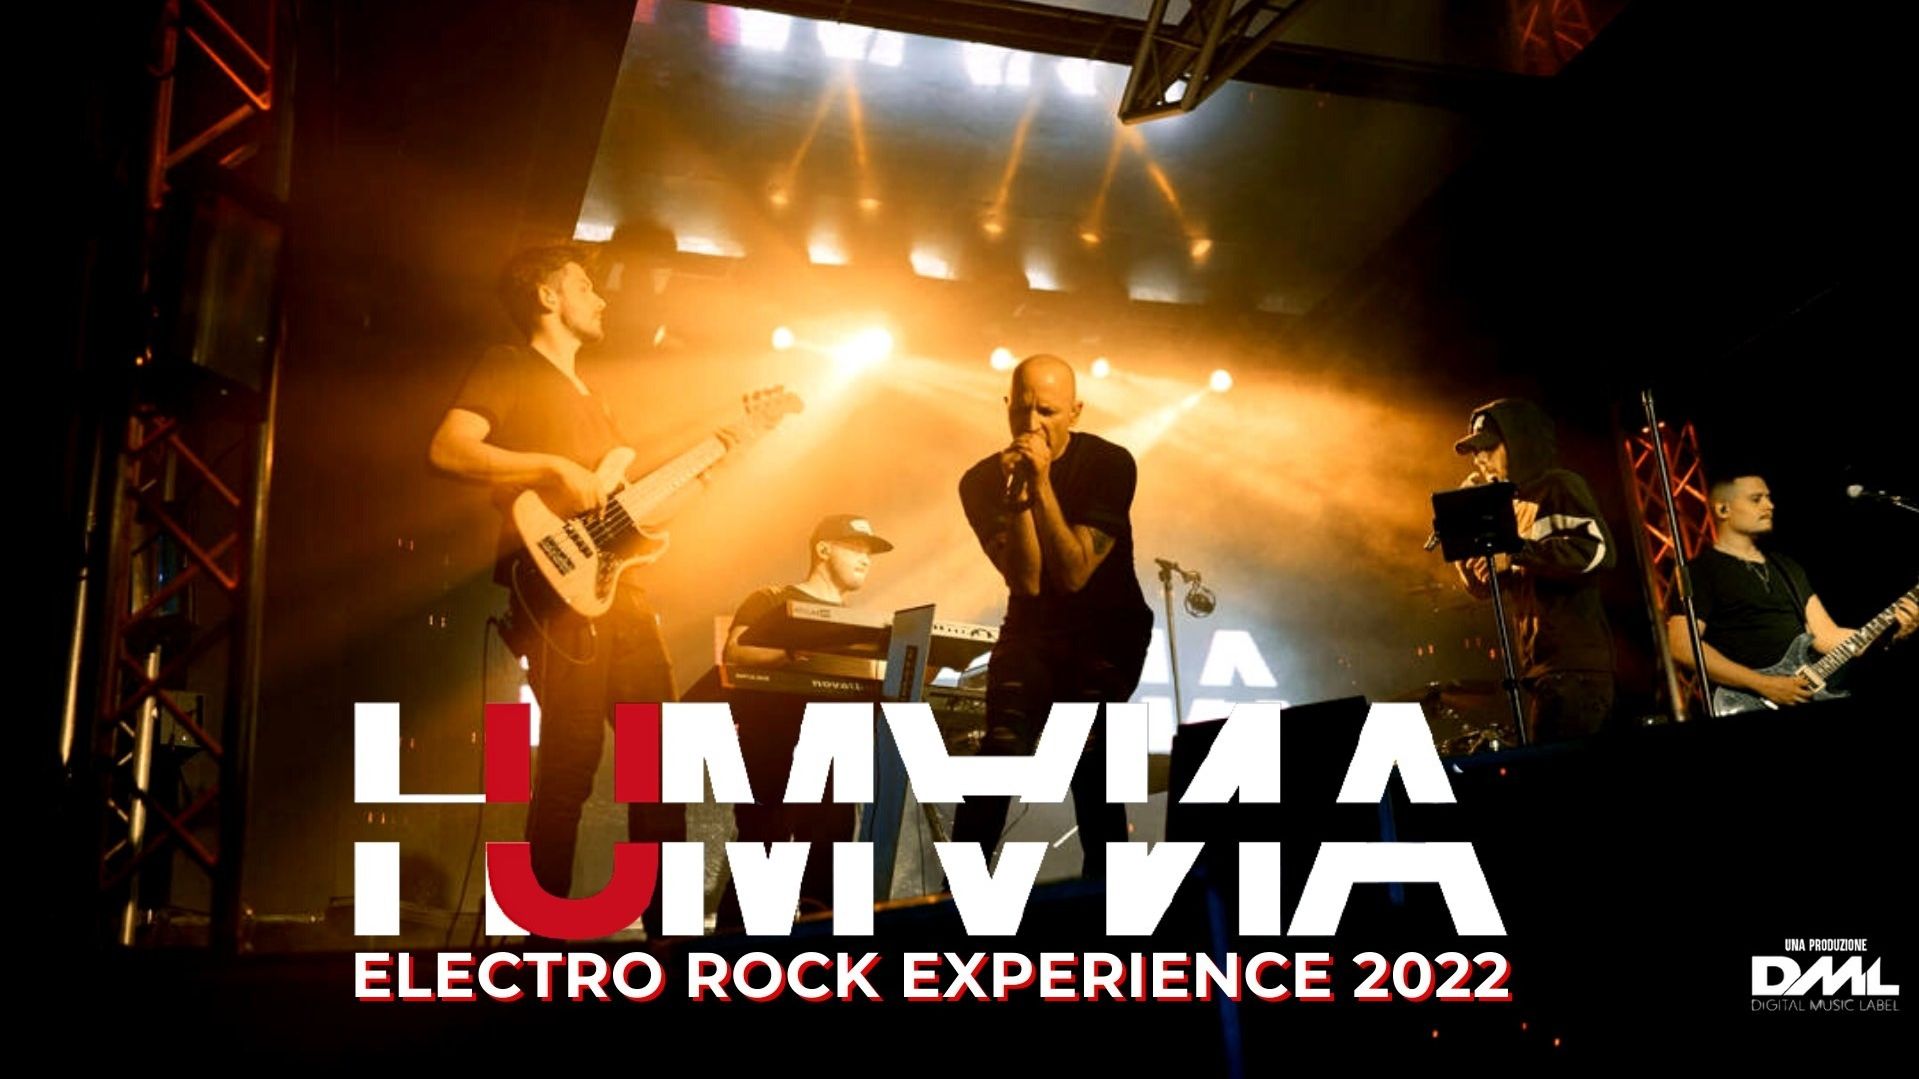 Humana - Electro Rock Experience